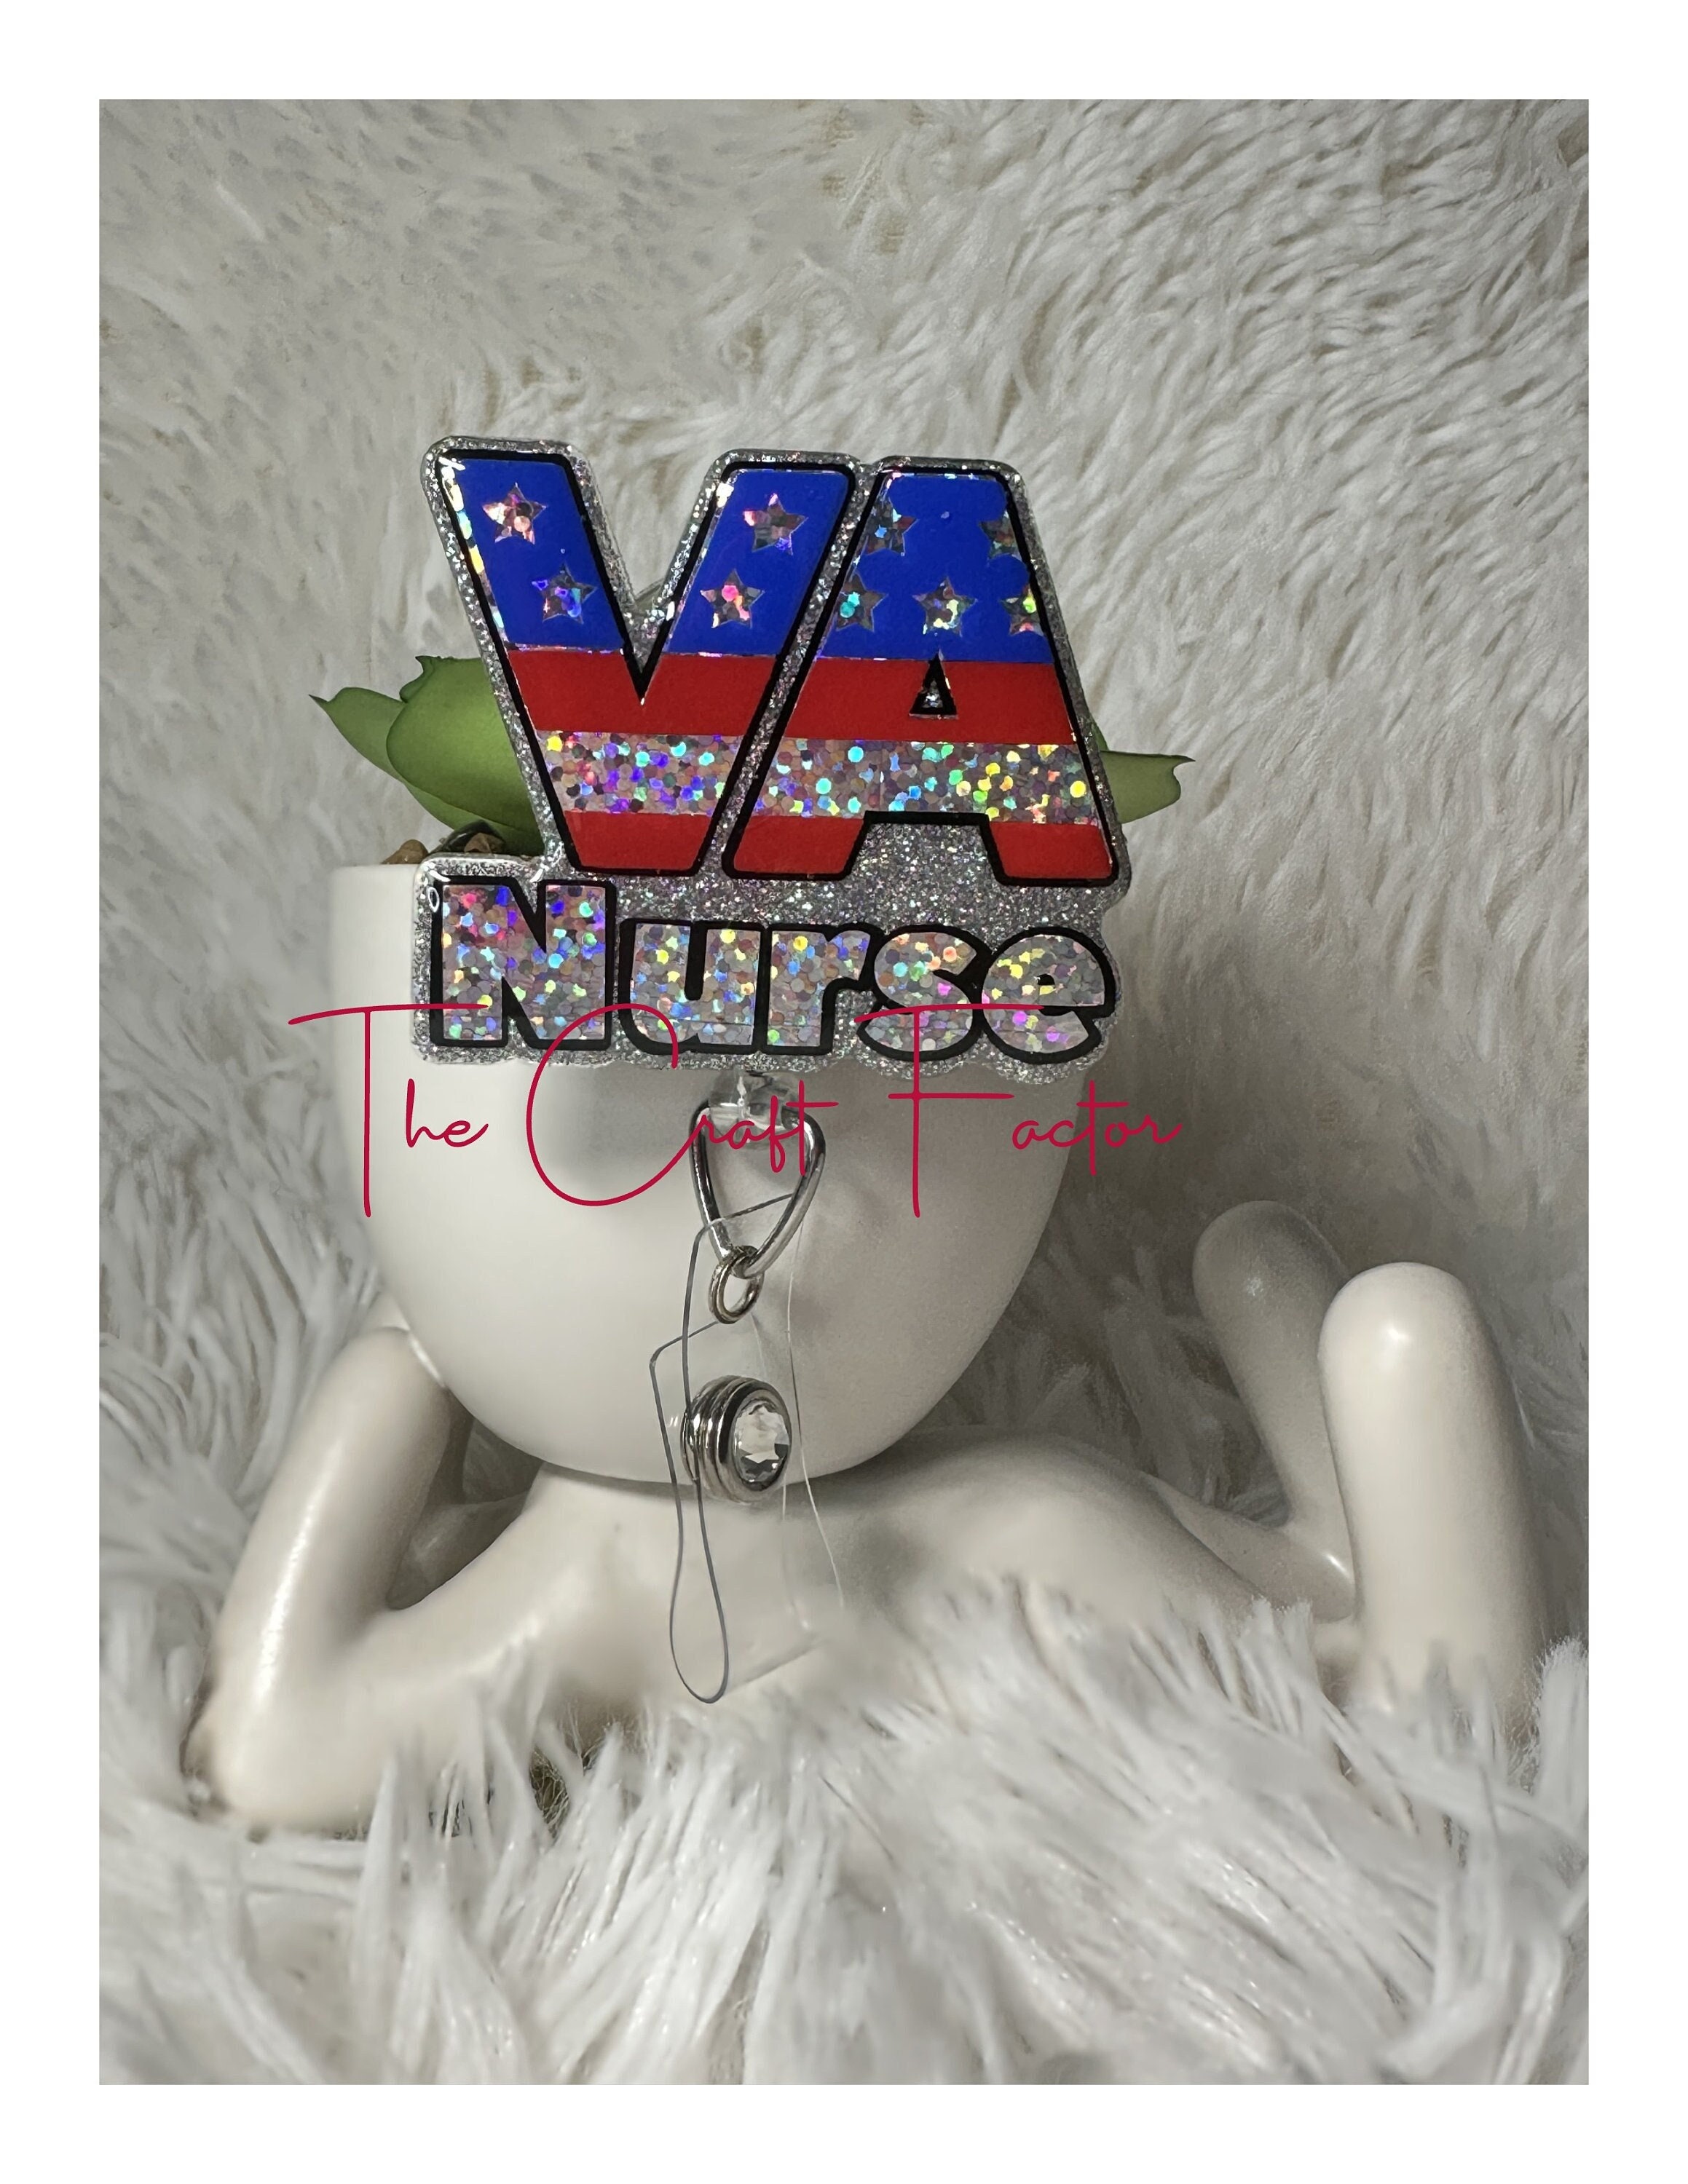 VA Nurse Badge Reel, VA Hospital Nurse Badge Reel, Veterans Hospital Badge Reel, Red White and Blue VA Badge Reel